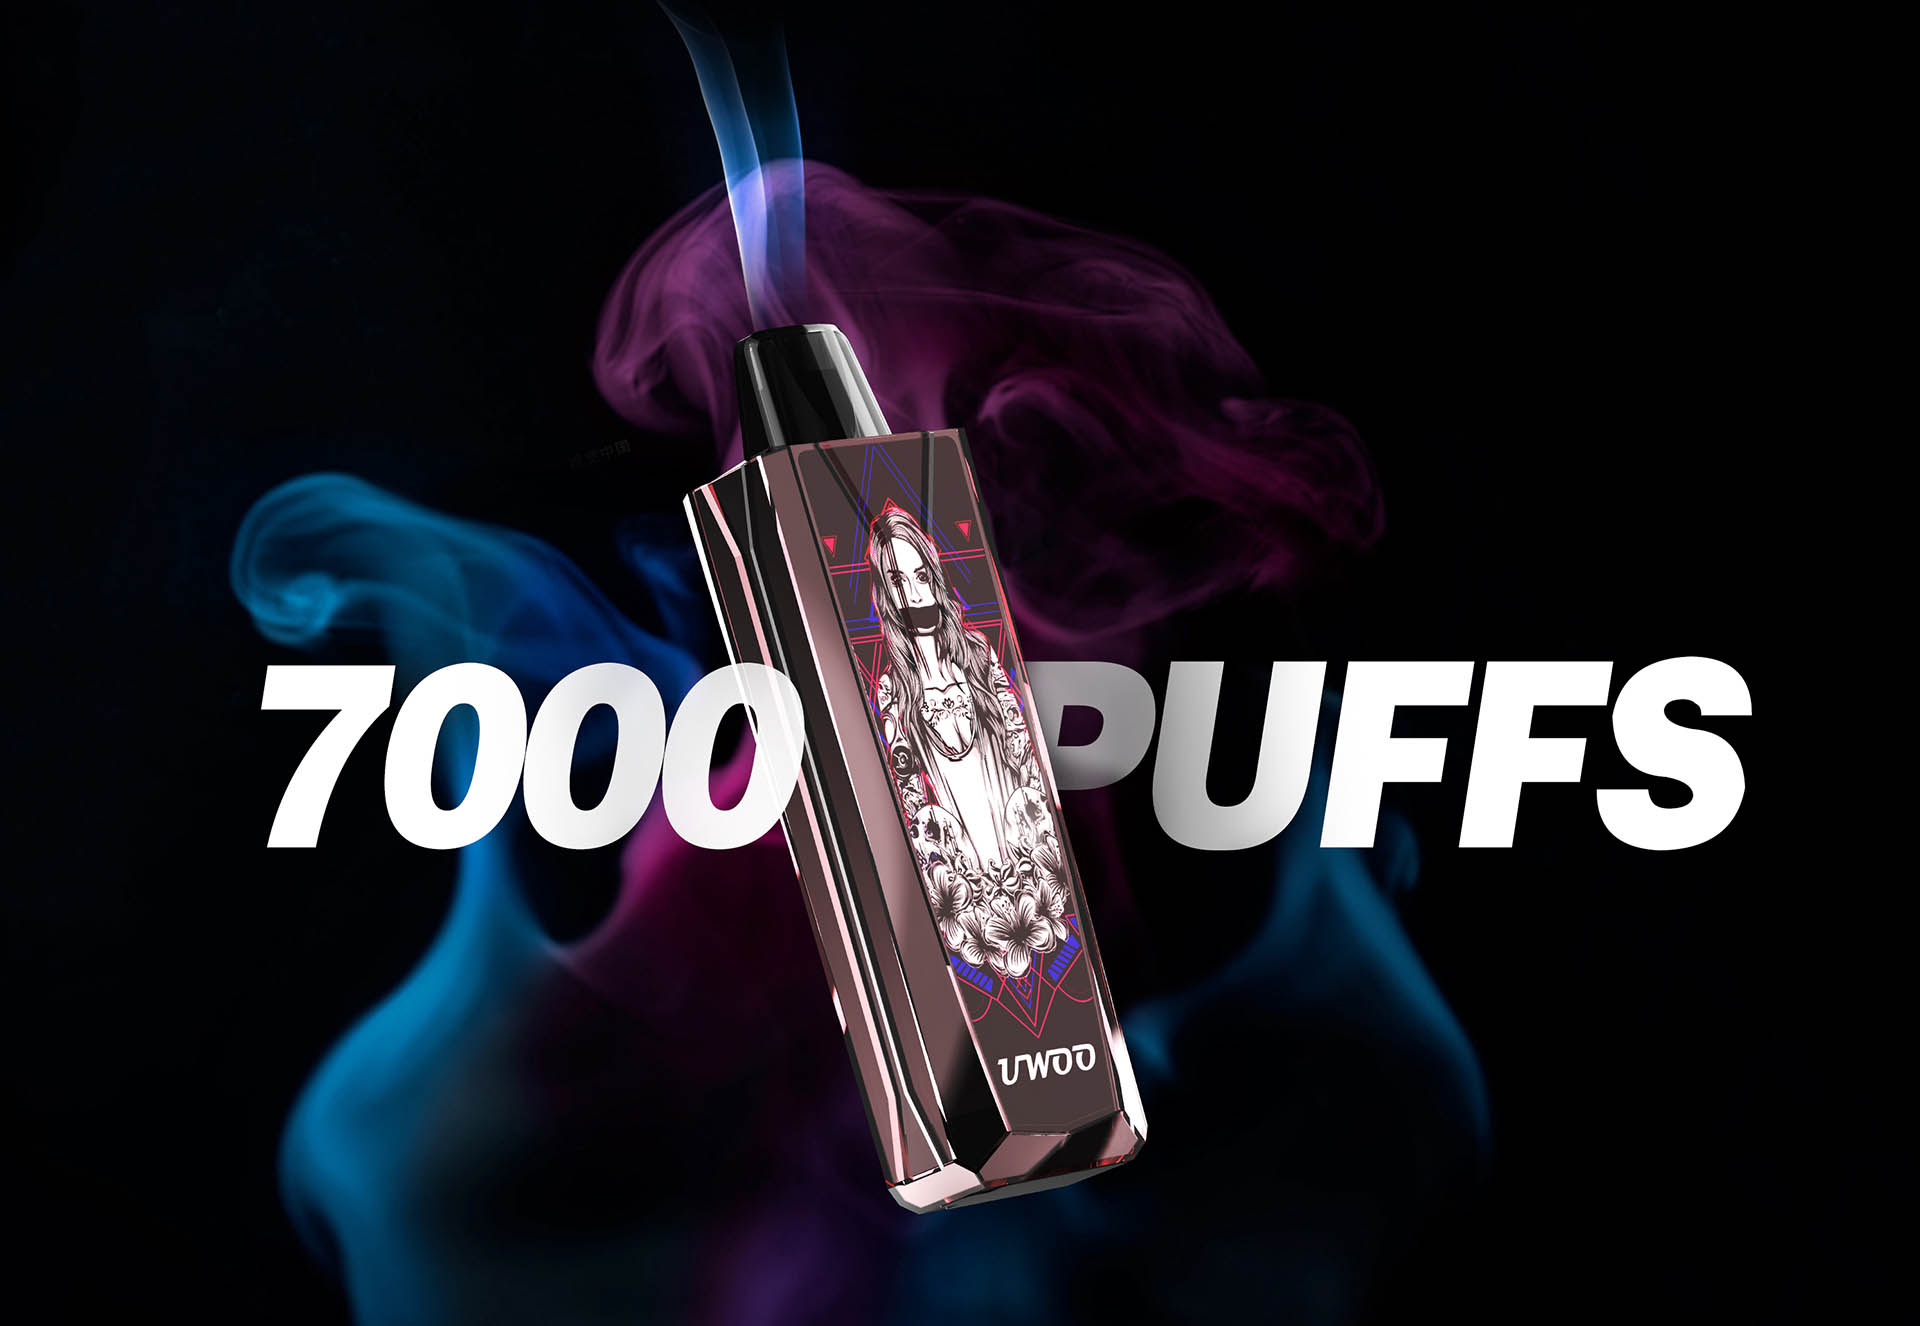 GLACIER 7000 puffs rechargeable vape